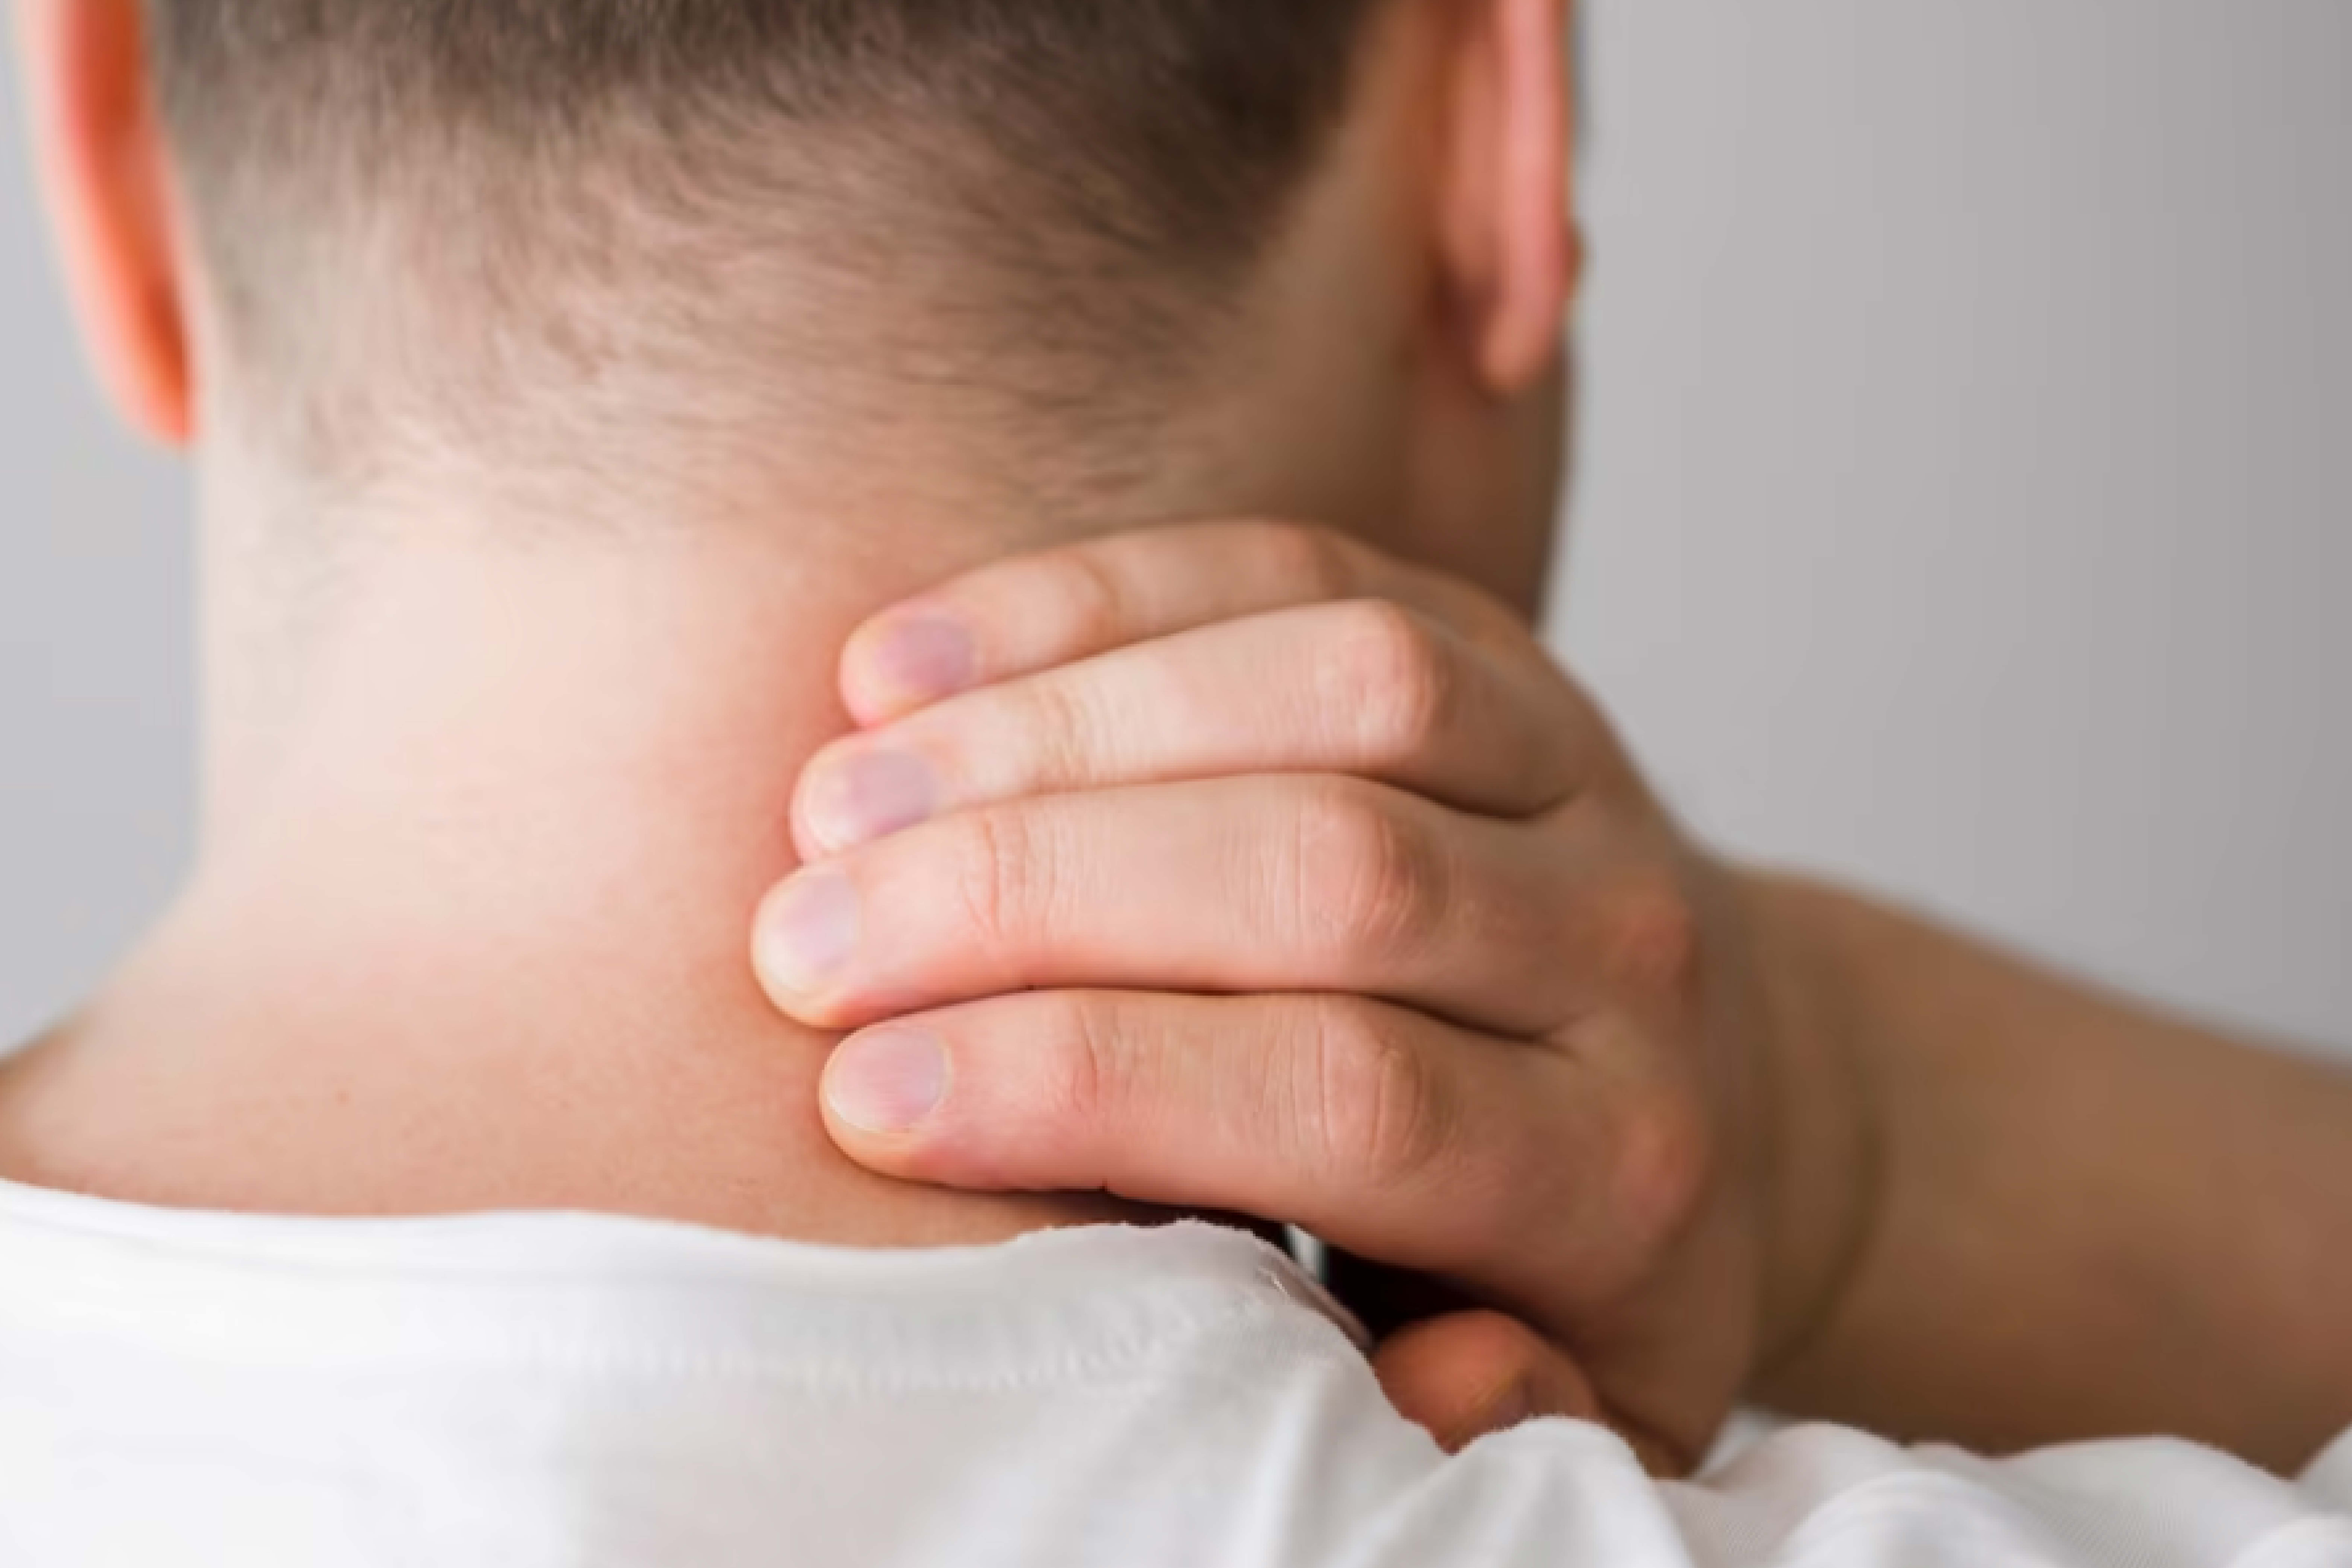 Фото мужчины с болью в шее при остеохондрозе